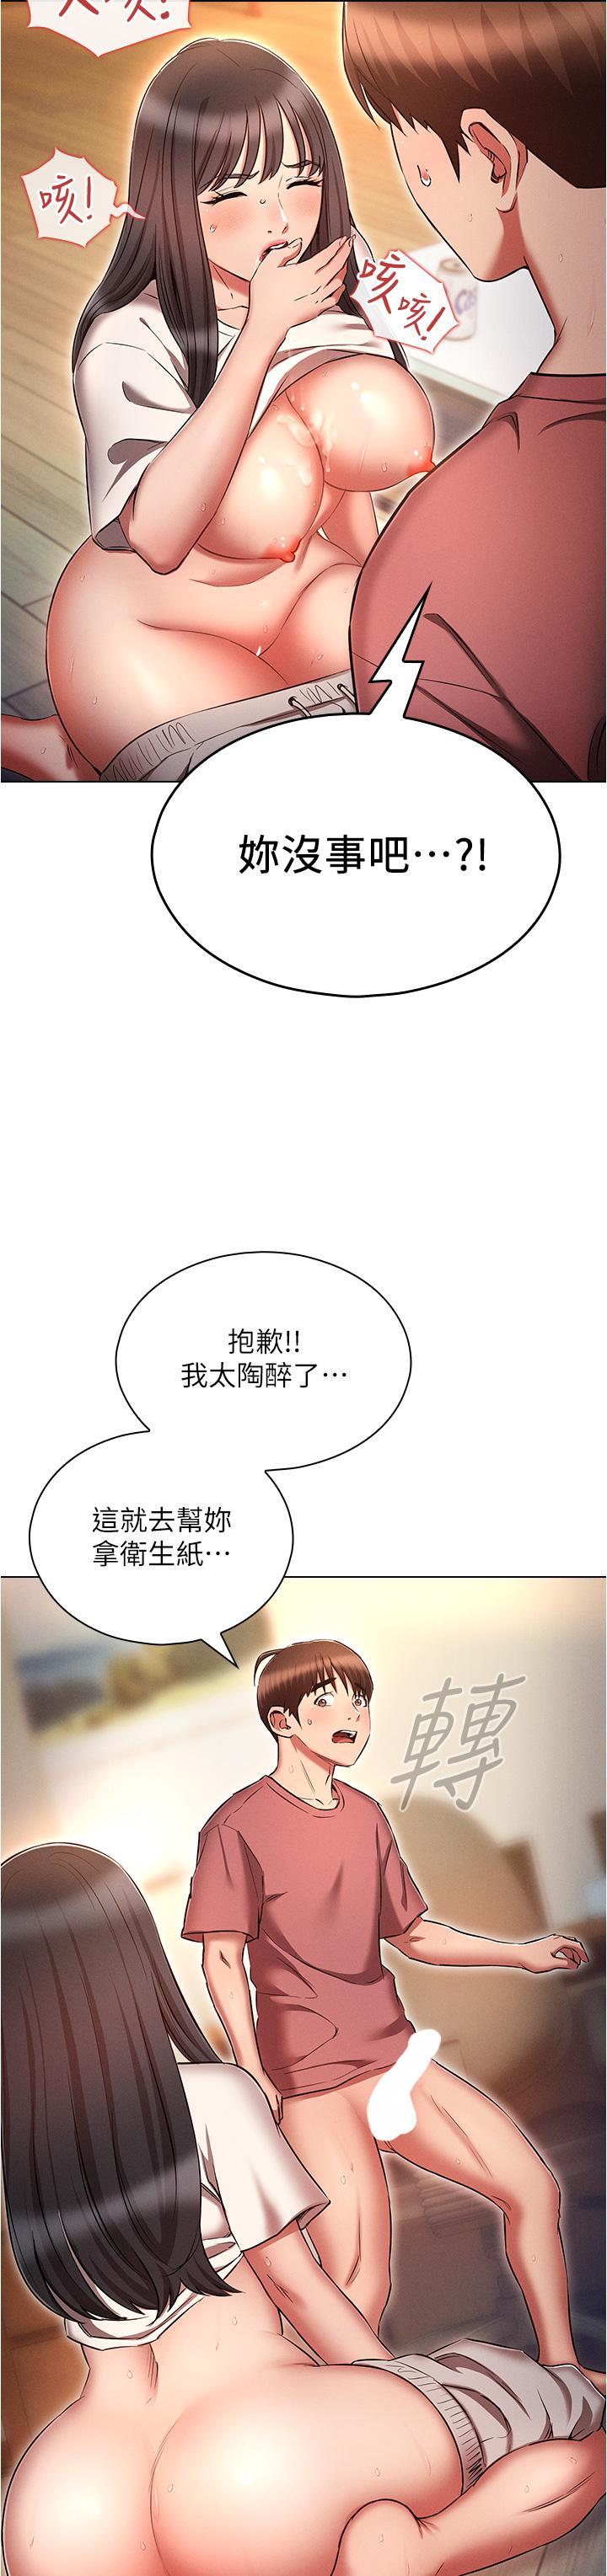 韩国污漫画 魯蛇的多重宇宙 第52话 性欲一口气爆发的世梦 23